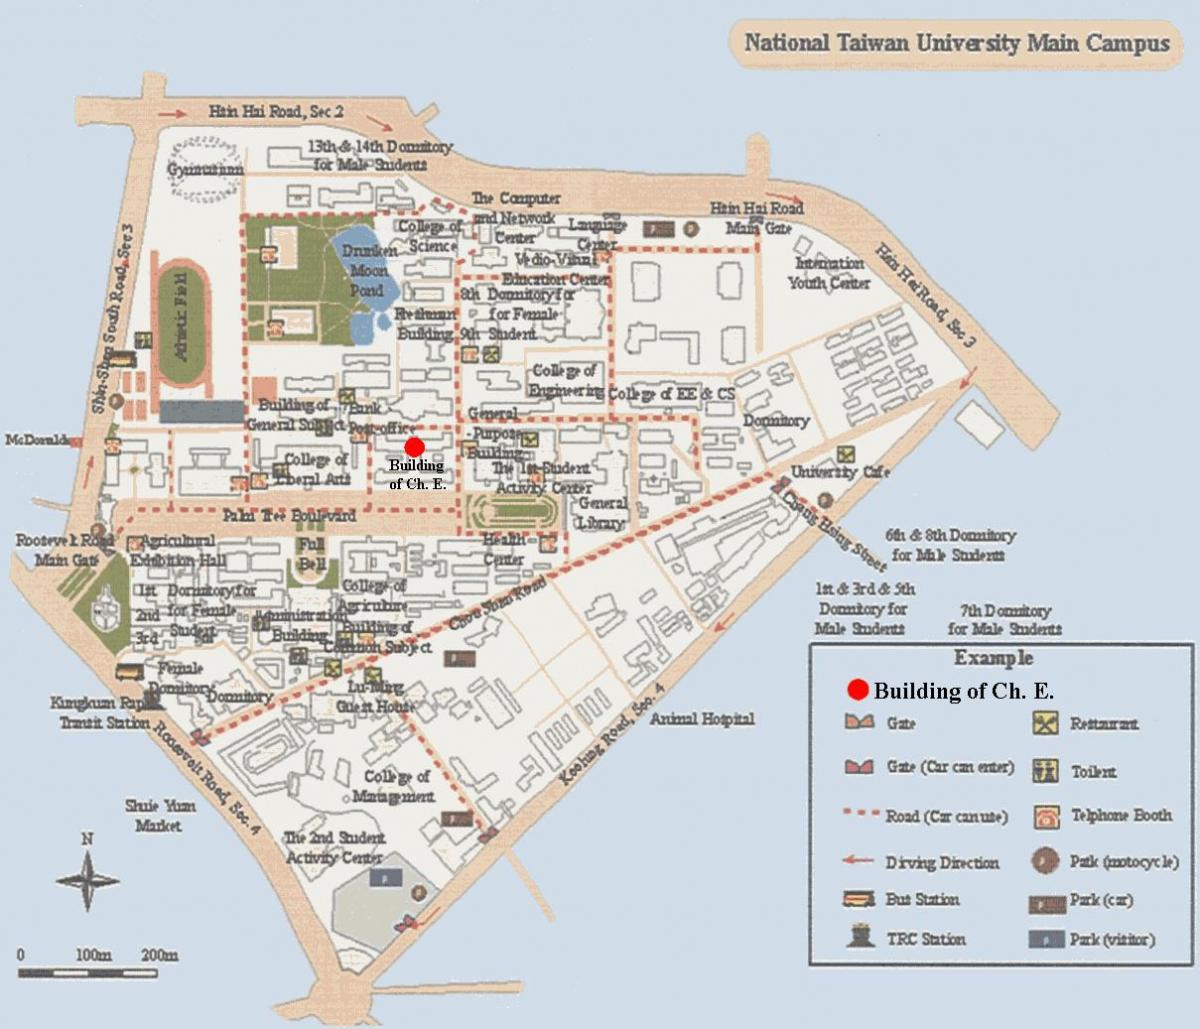 εθνικό πανεπιστήμιο της ταϊβάν χάρτη της πανεπιστημιούπολης